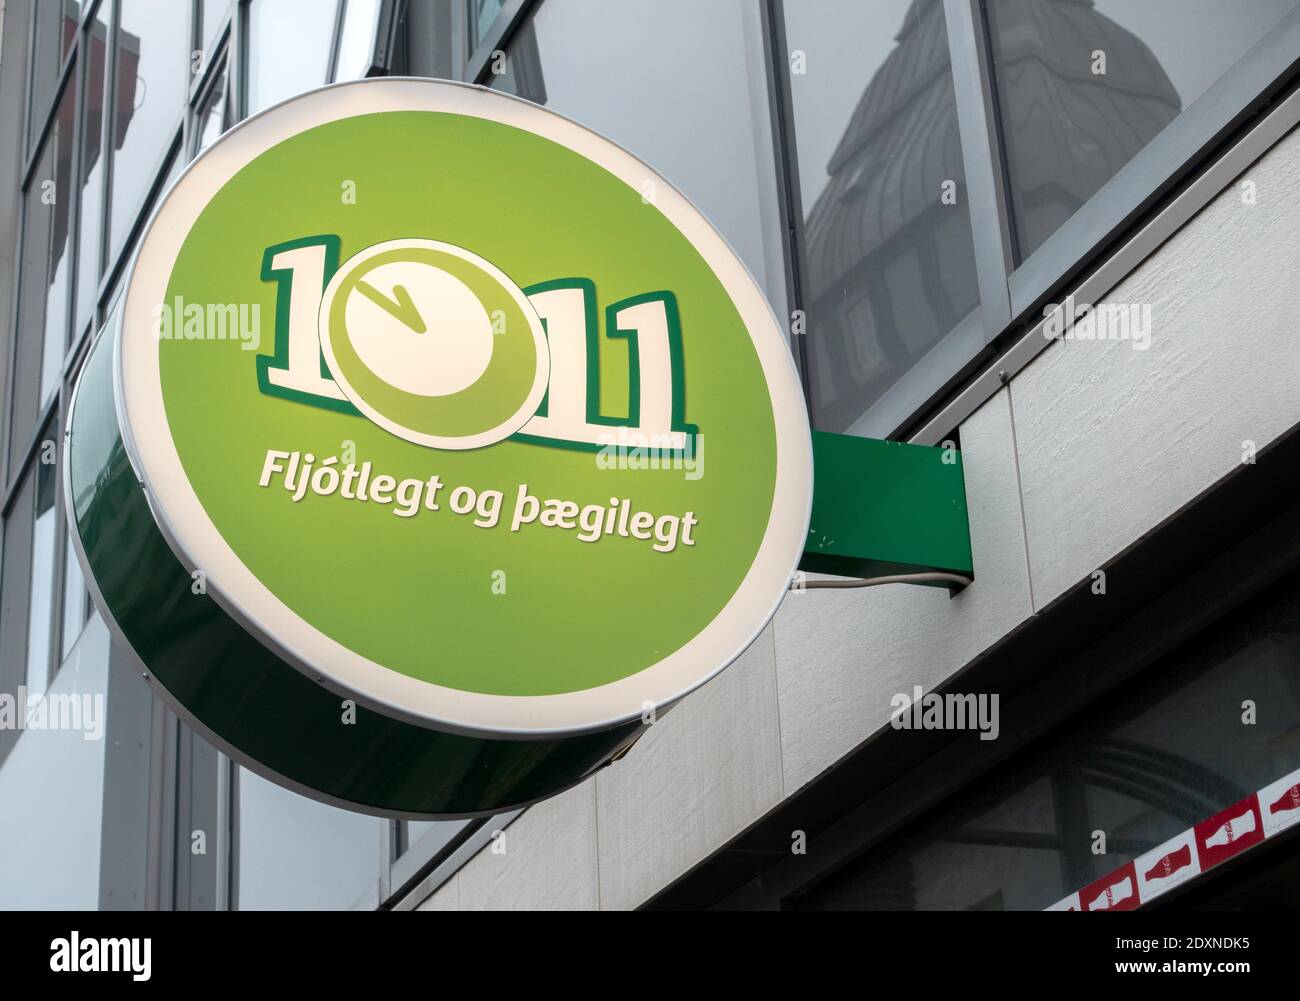 10-11 magasin de proximité enseigne éclairée logo Reykjavik Islande Banque D'Images